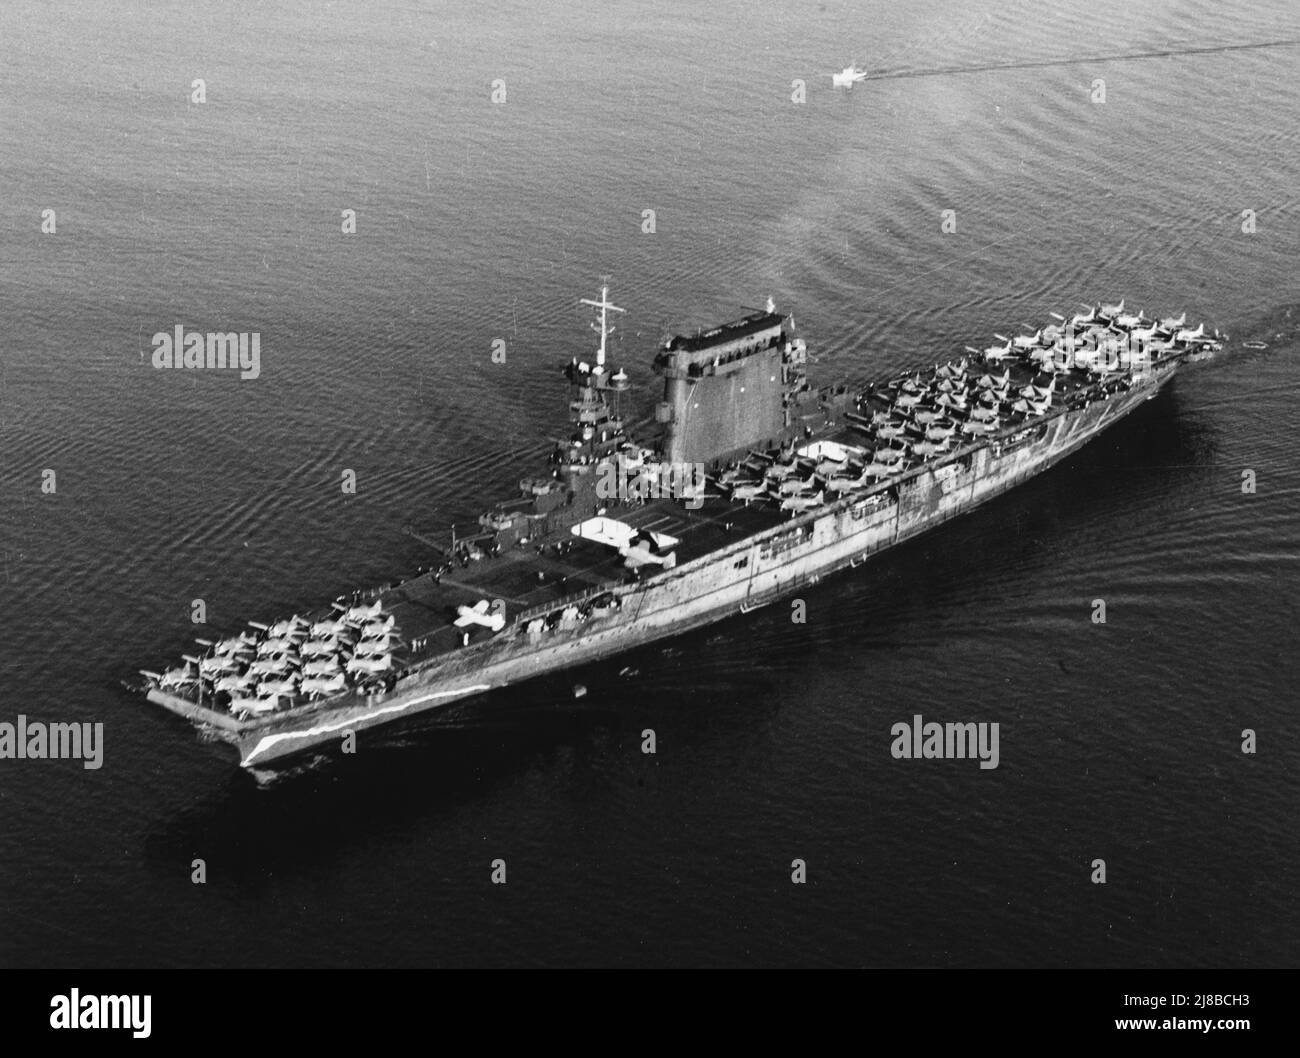 USS Lexington (CV-2) départ de San Diego, Californie, 14 octobre 1941. Les avions stationnés sur son pont de vol comprennent F2A-1 combattants (stationnés vers l'avant), des bombardiers scouts SBD (amidoes) et des avions torpilles TBD-1 (AFT). Notez la fausse vague d'arc peinte sur sa coque, vers l'avant, et l'état de craie de la peinture de camouflage de la coque. Banque D'Images